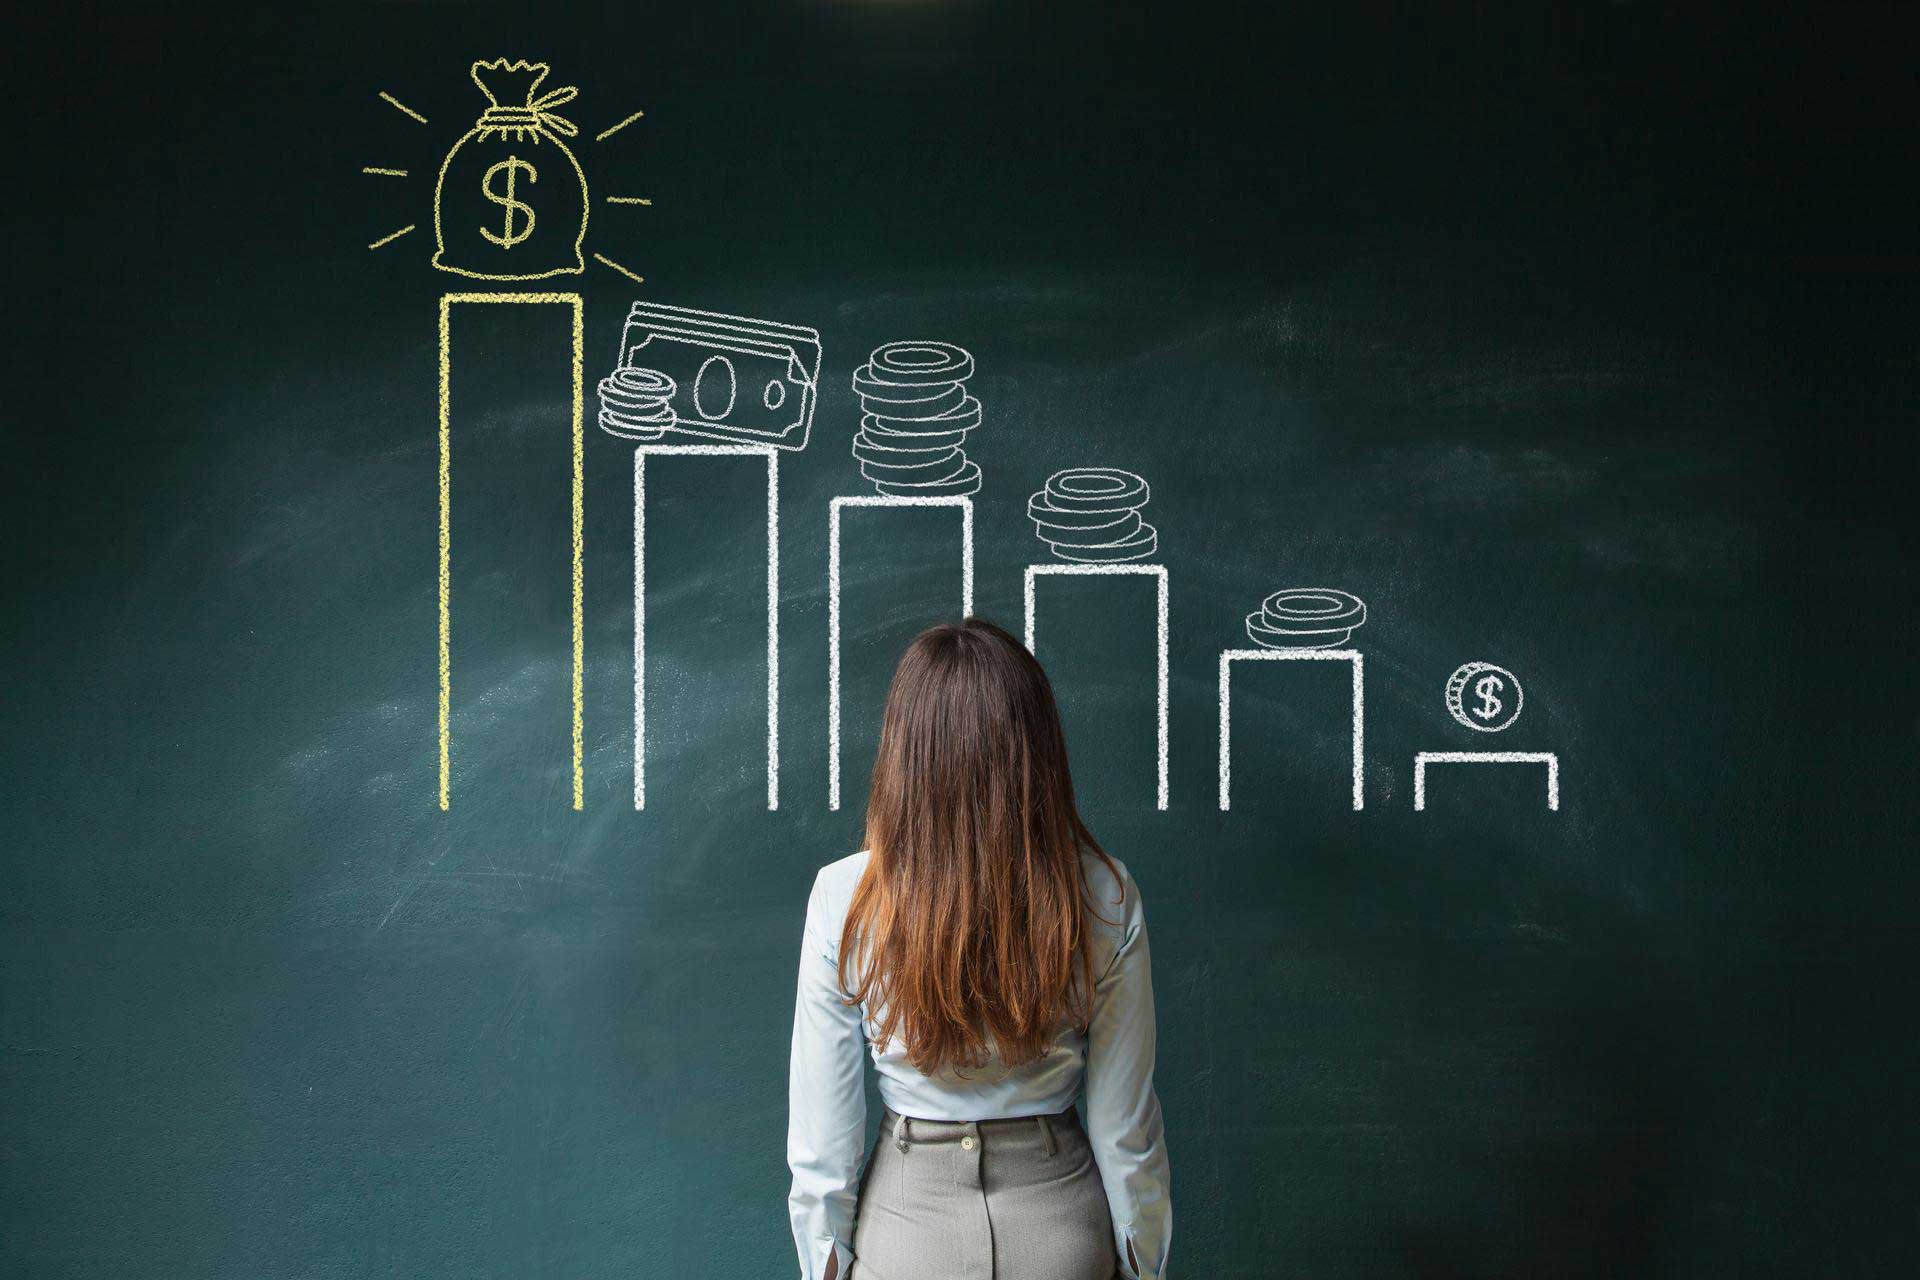 Eine Frau steht vor einer Wandtafel, wo Finanzsymbole aufgemalt sind